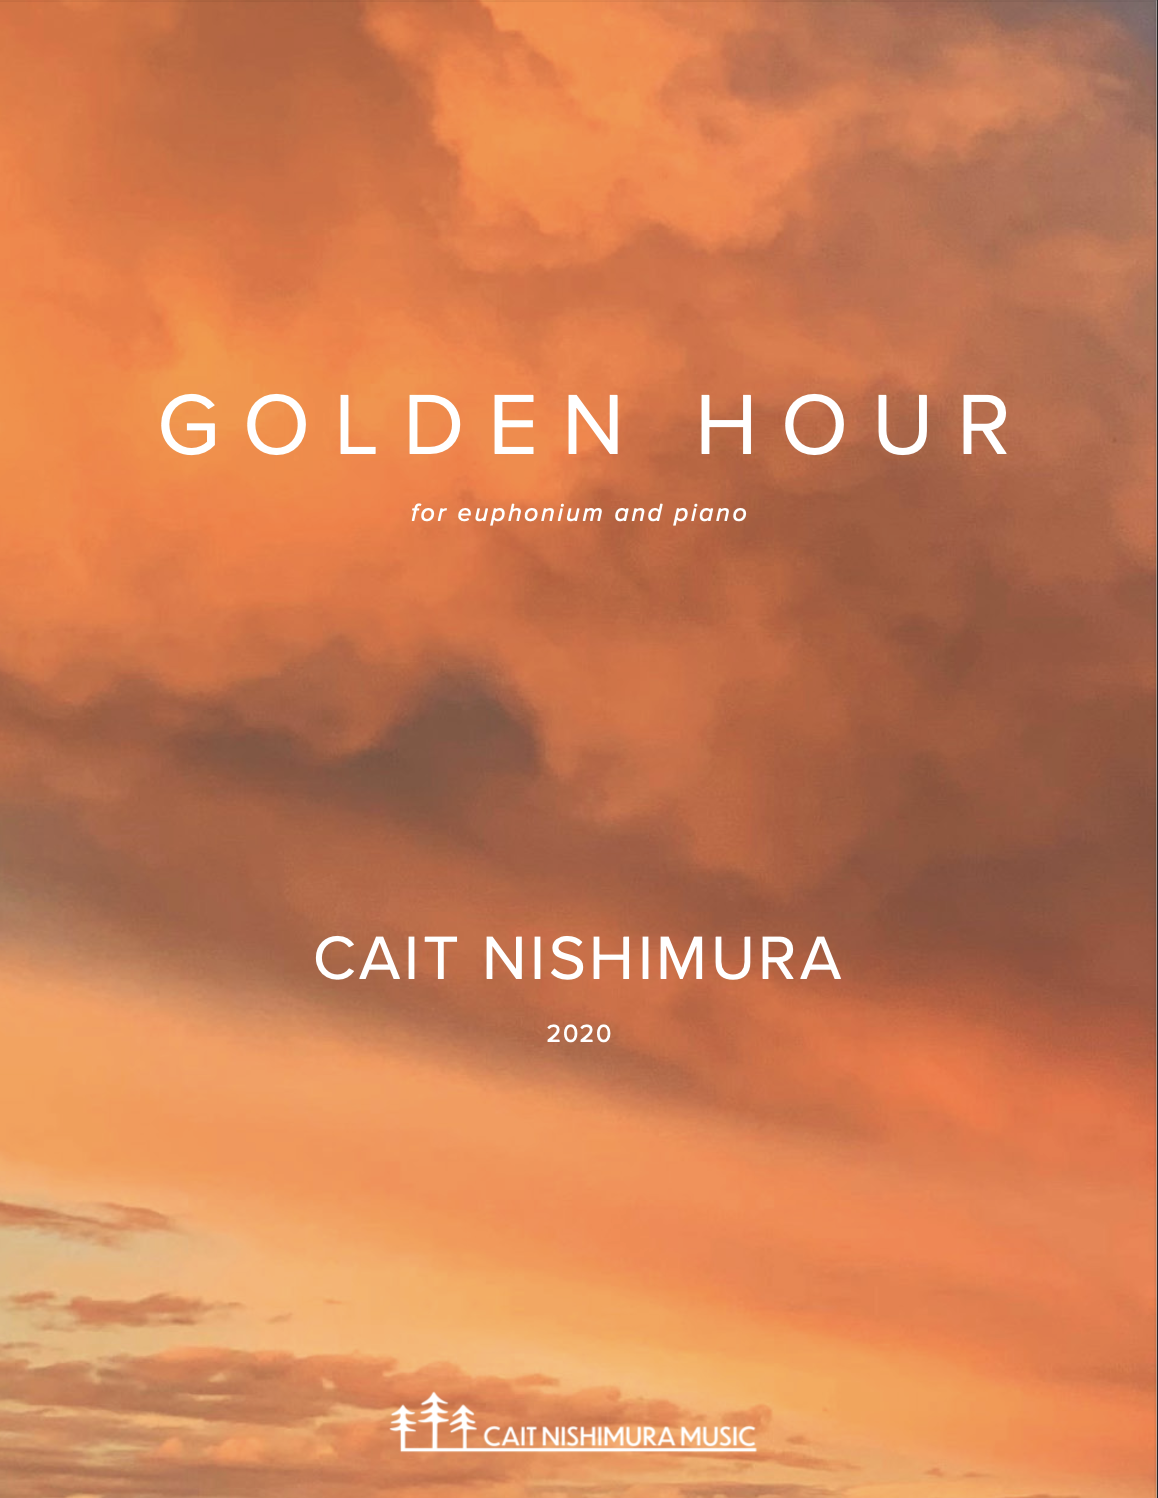 Golden Hour (Euphonium Version) by Cait Nishimura